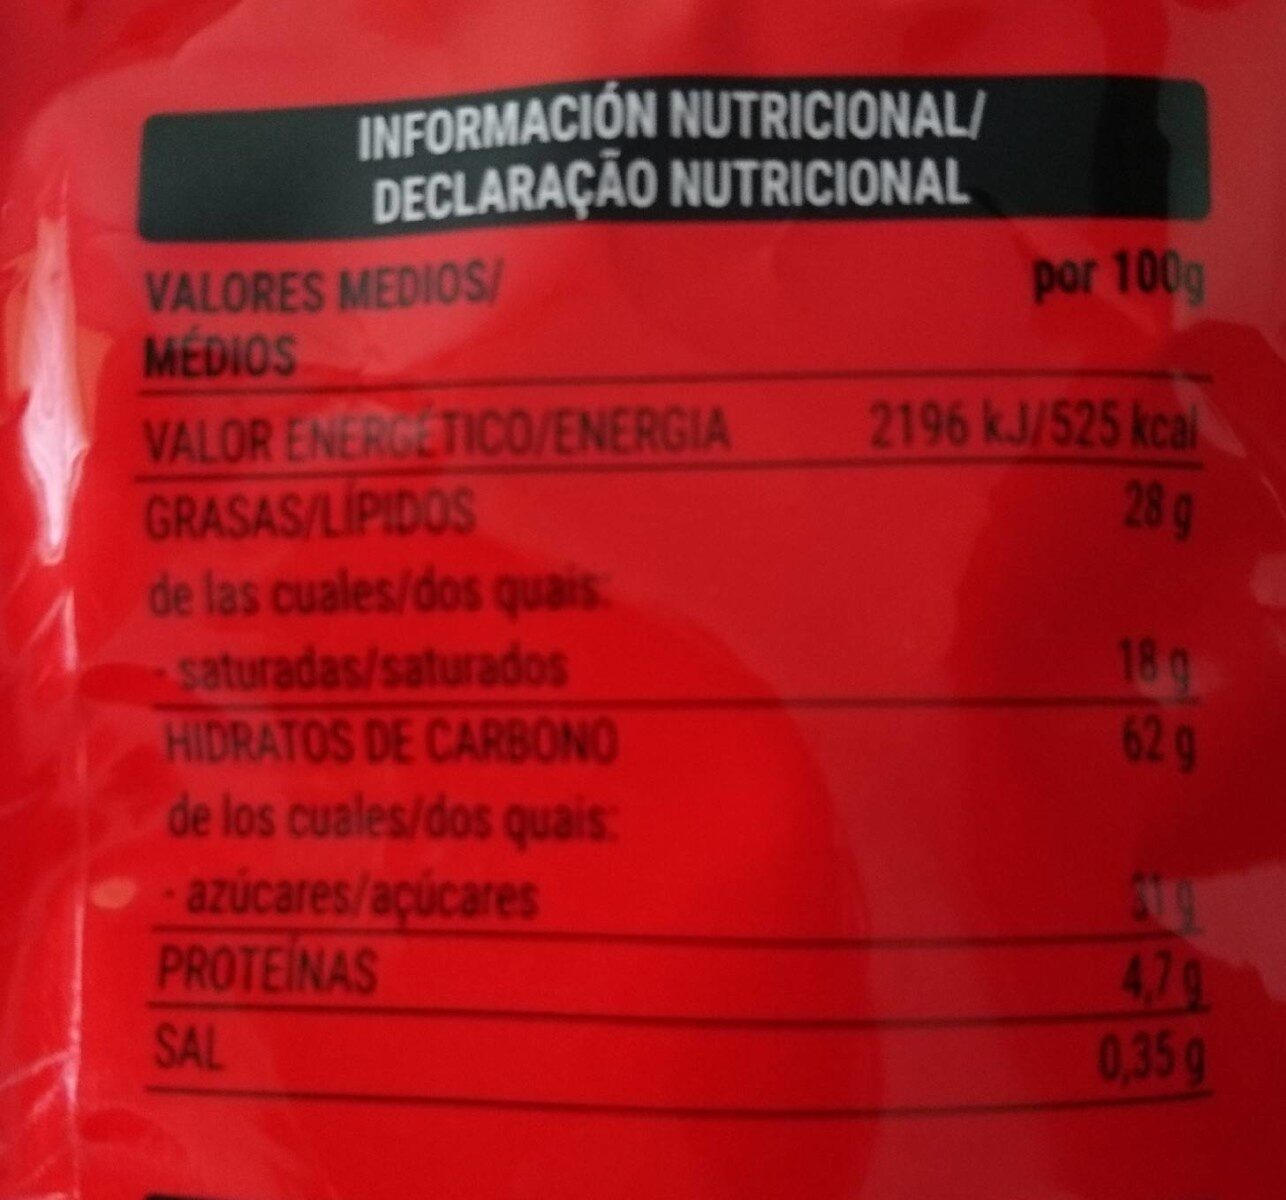 Surtido De Galletas Y Barquillos - Nutrition facts - es